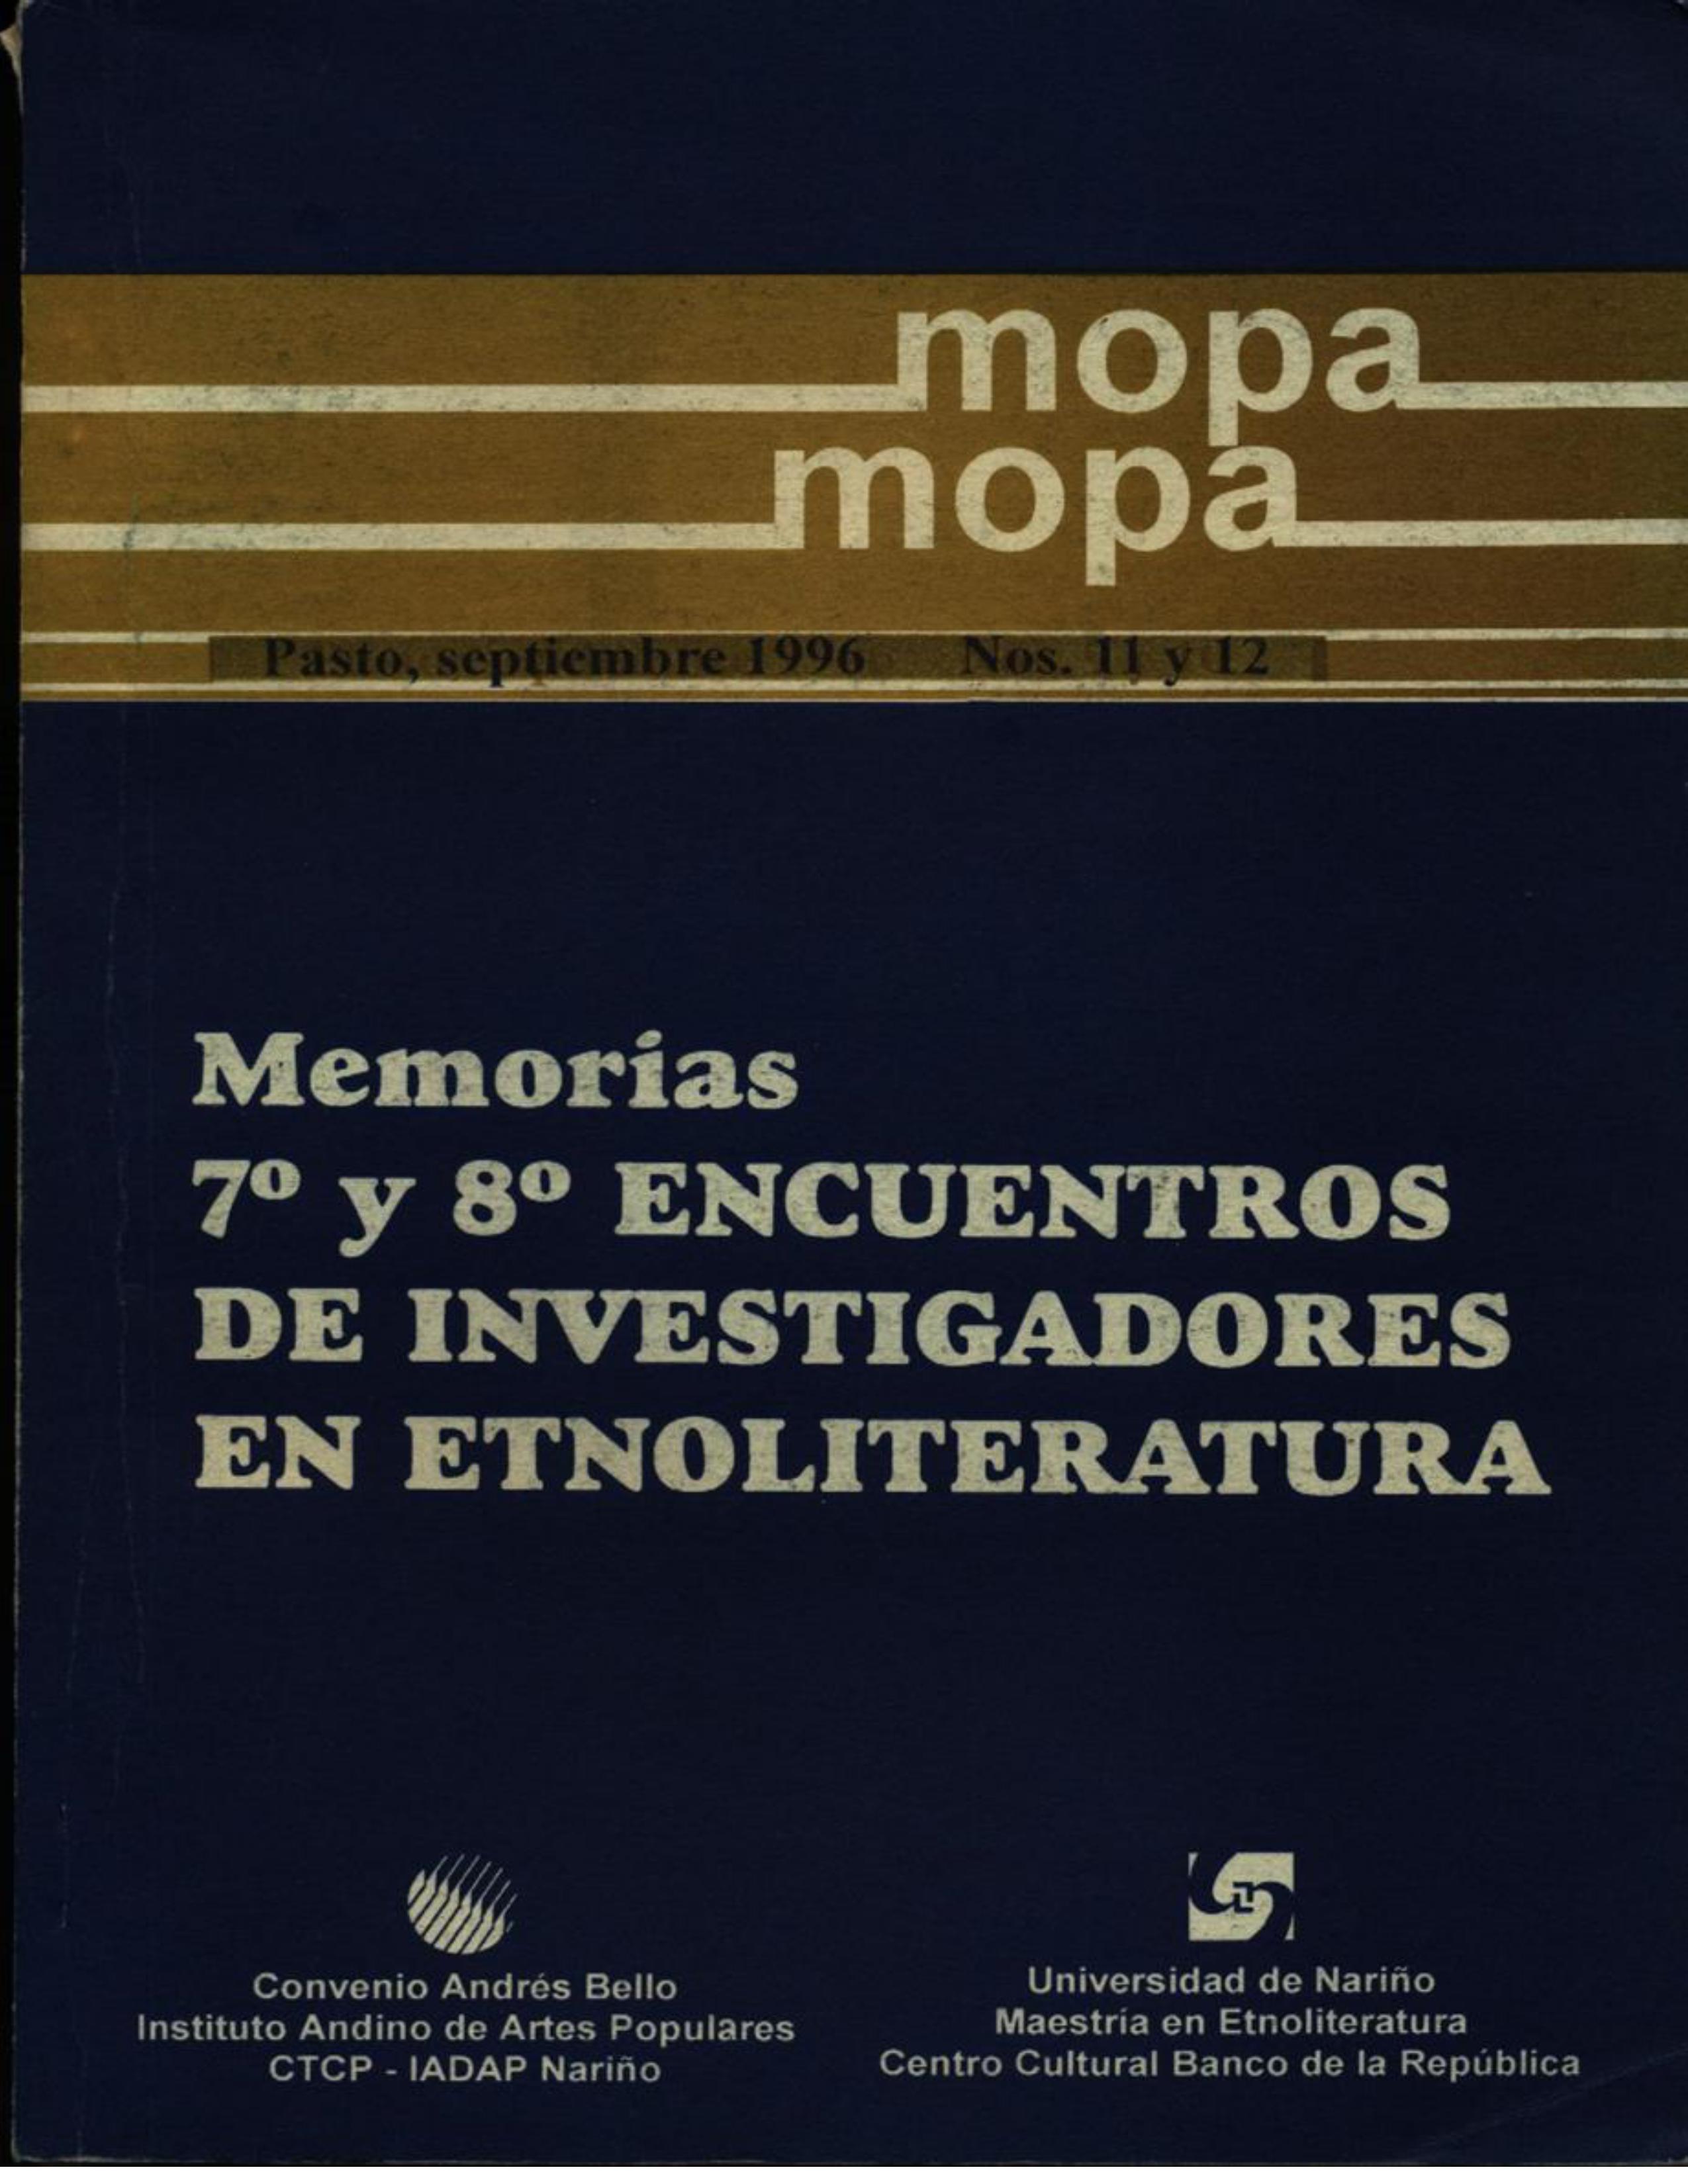 					Ver Vol. 2 Núm. 11Y12 (1996): Revista Mopa Mopa 11 Y 12
				